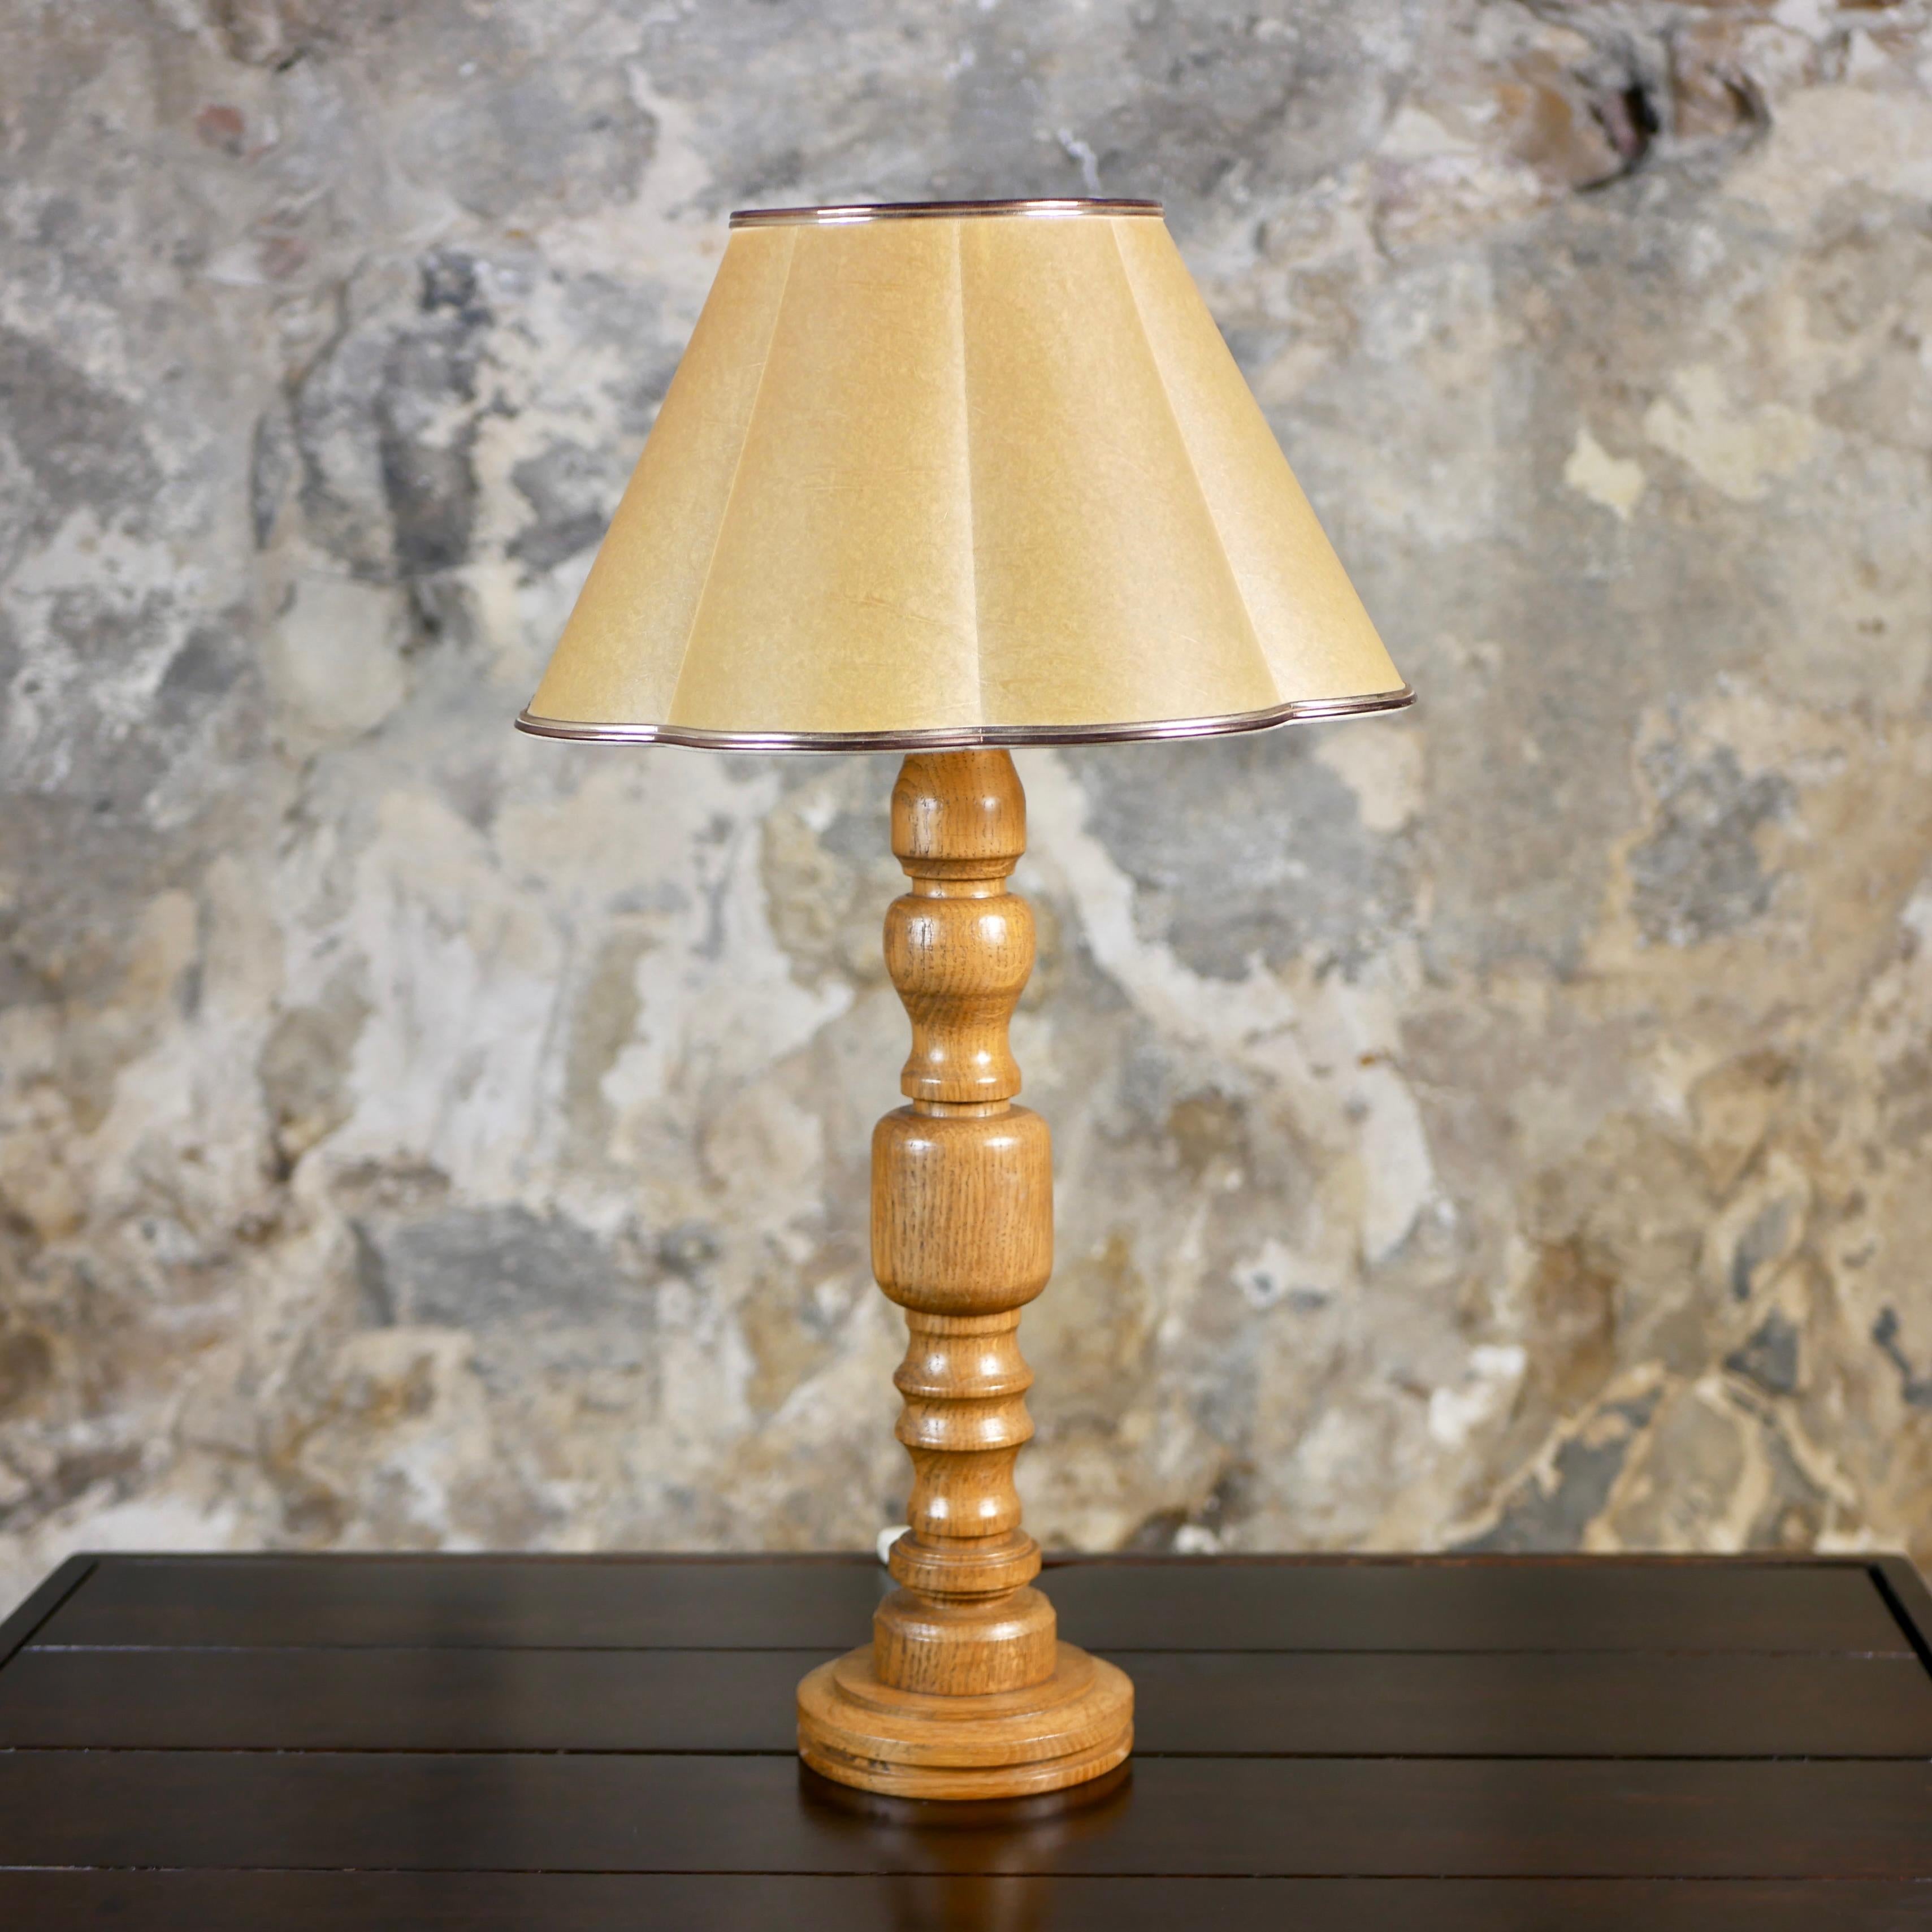 Wunderschöne skandinavische Lampe aus Eiche aus den Niederlanden, hergestellt in den 1970er Jahren. Lampenschirm aus Frankreich, ca. 1960er Jahre.
Schöner heller Farbton, und in sehr gutem Zustand.
Abmessungen : H57, T33cm (max)
